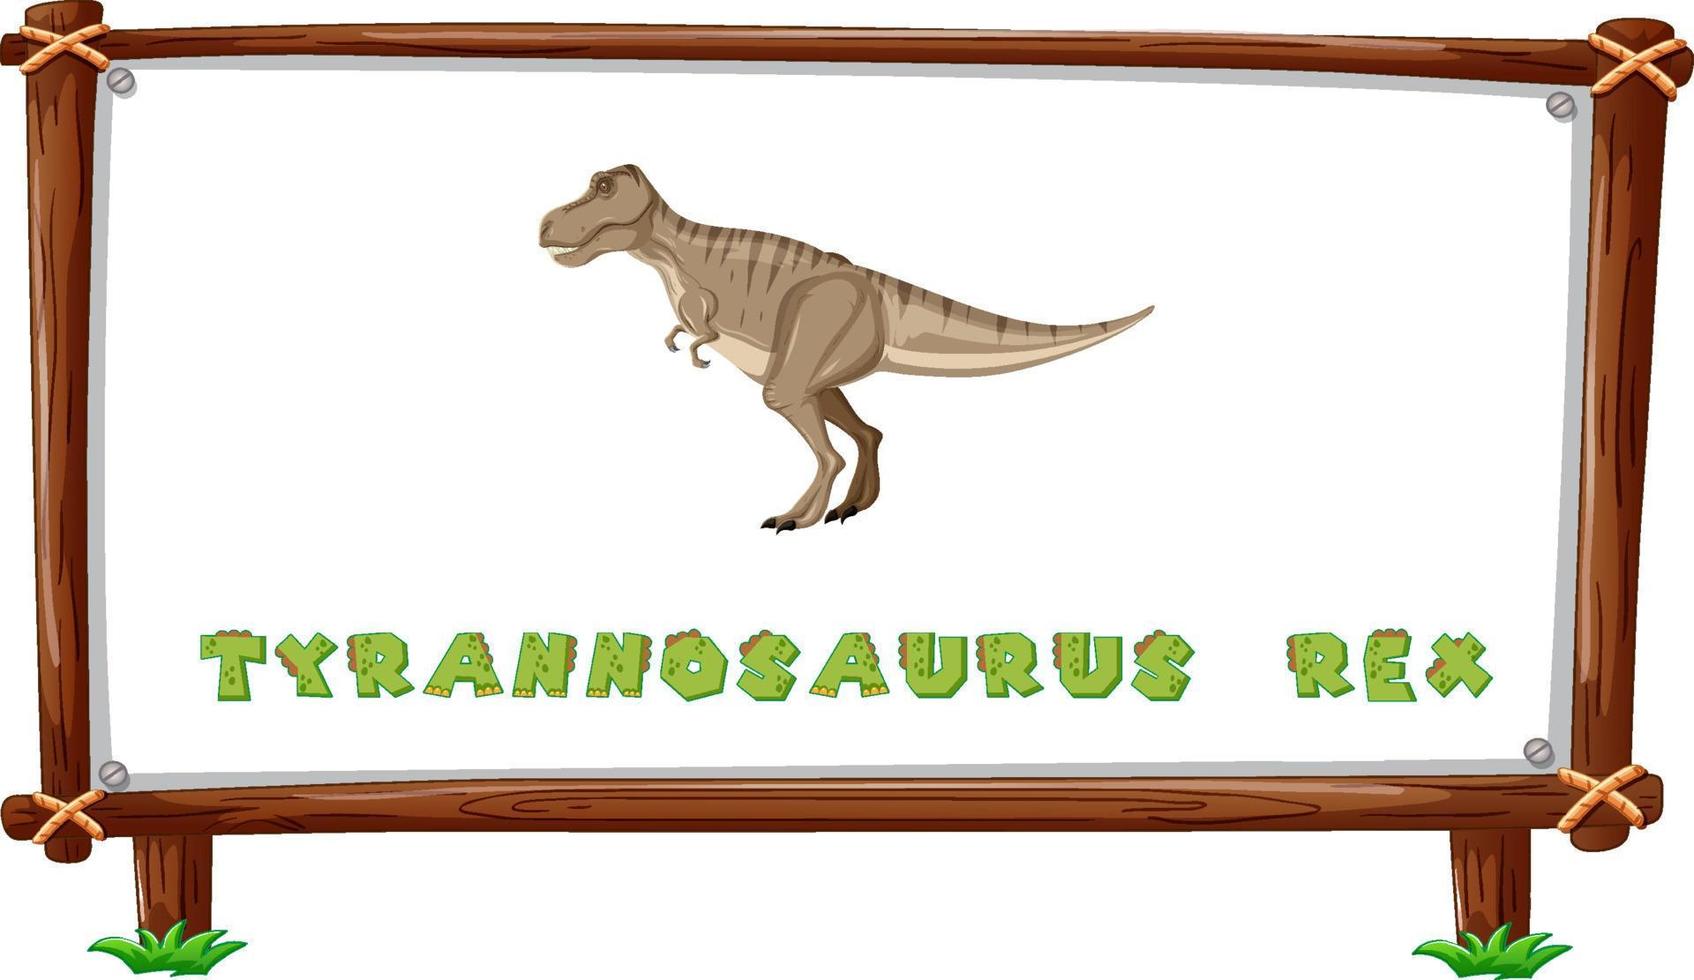 framesjabloon met dinosaurussen en tekst tyrannosaurus rex-ontwerp erin vector